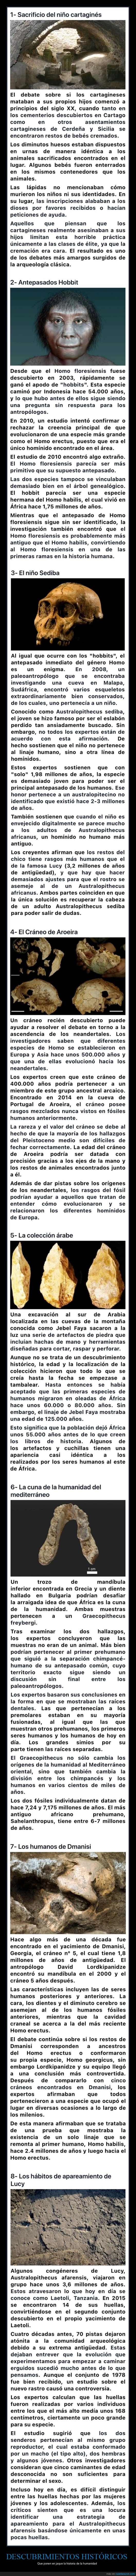 descubrimientos,arqueología,prehistoria